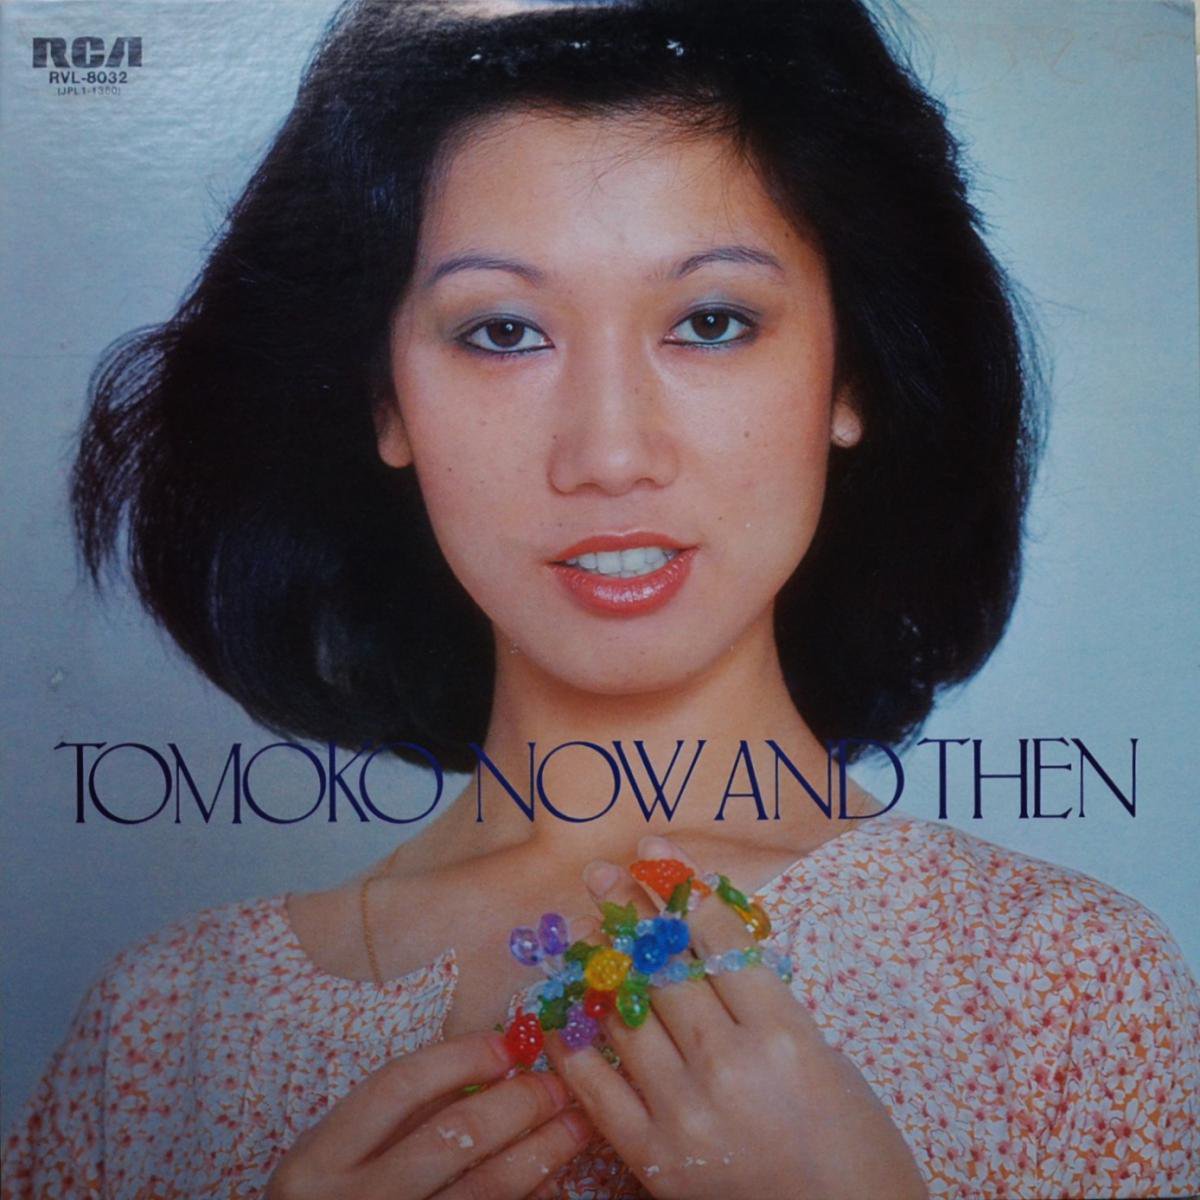 惣領智子 TOMOKO SORYO / ナウ・アンド・ゼン NOW AND THEN (終わりのない歌) (LP)